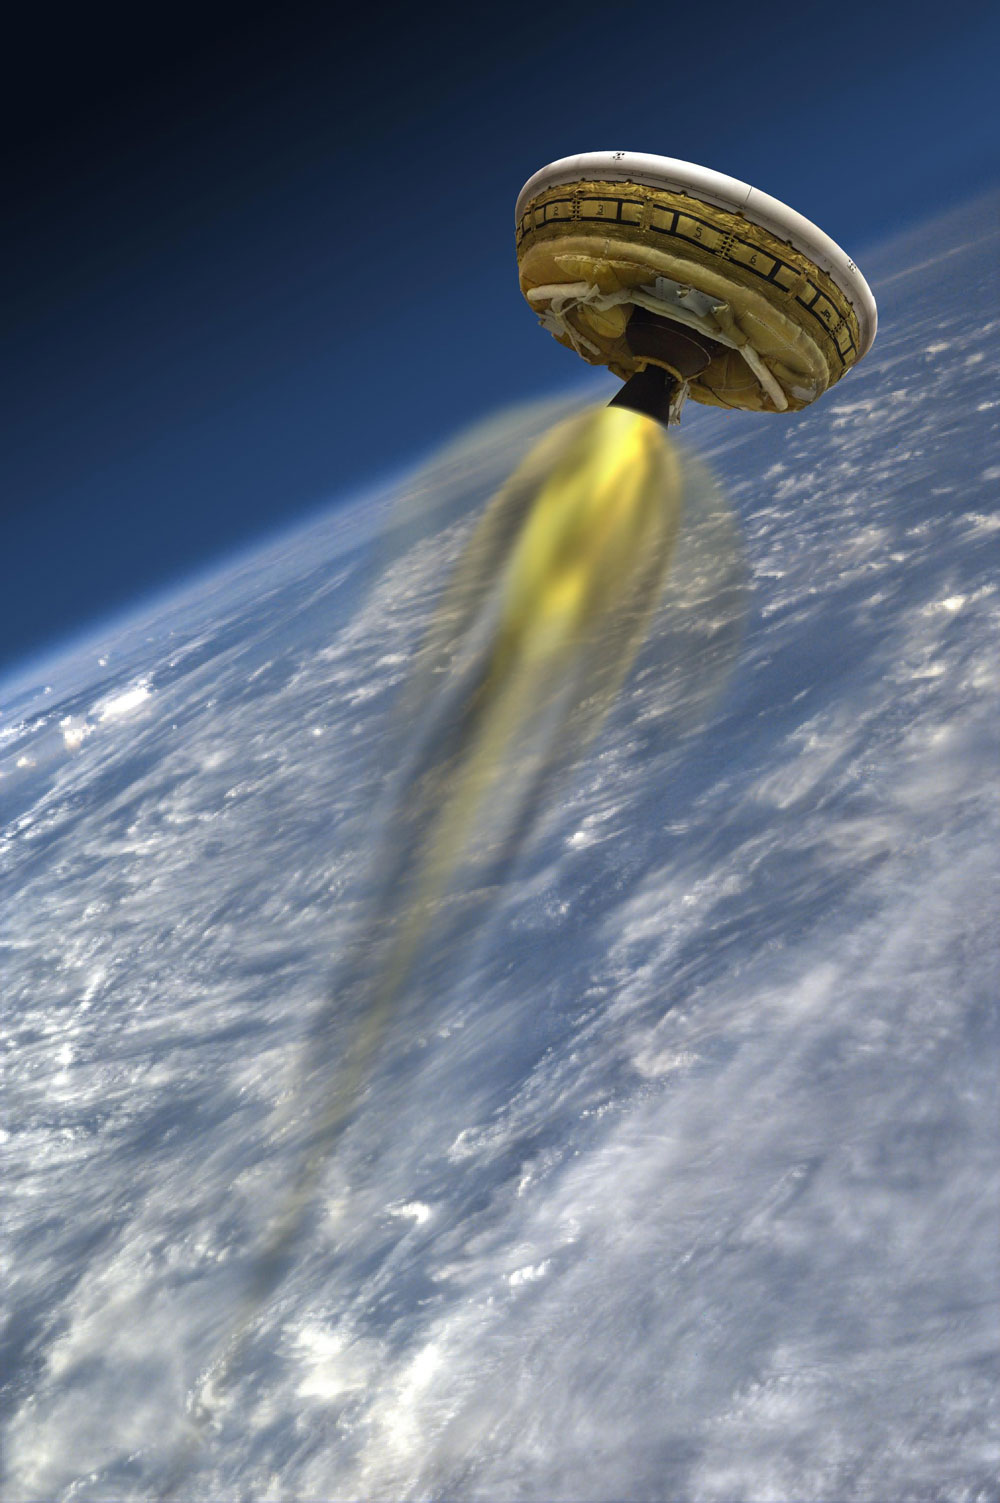 Vue d'artiste du prototype LDSD (Low-Density Supersonic Decelerator) qui, une fois gonflé, prend l'allure d'une soucoupe volante. Pour le test, il était propulsé par un moteur afin de reproduire, dans la stratosphère, les conditions d'une entrée dans l'atmosphère martienne. © Nasa